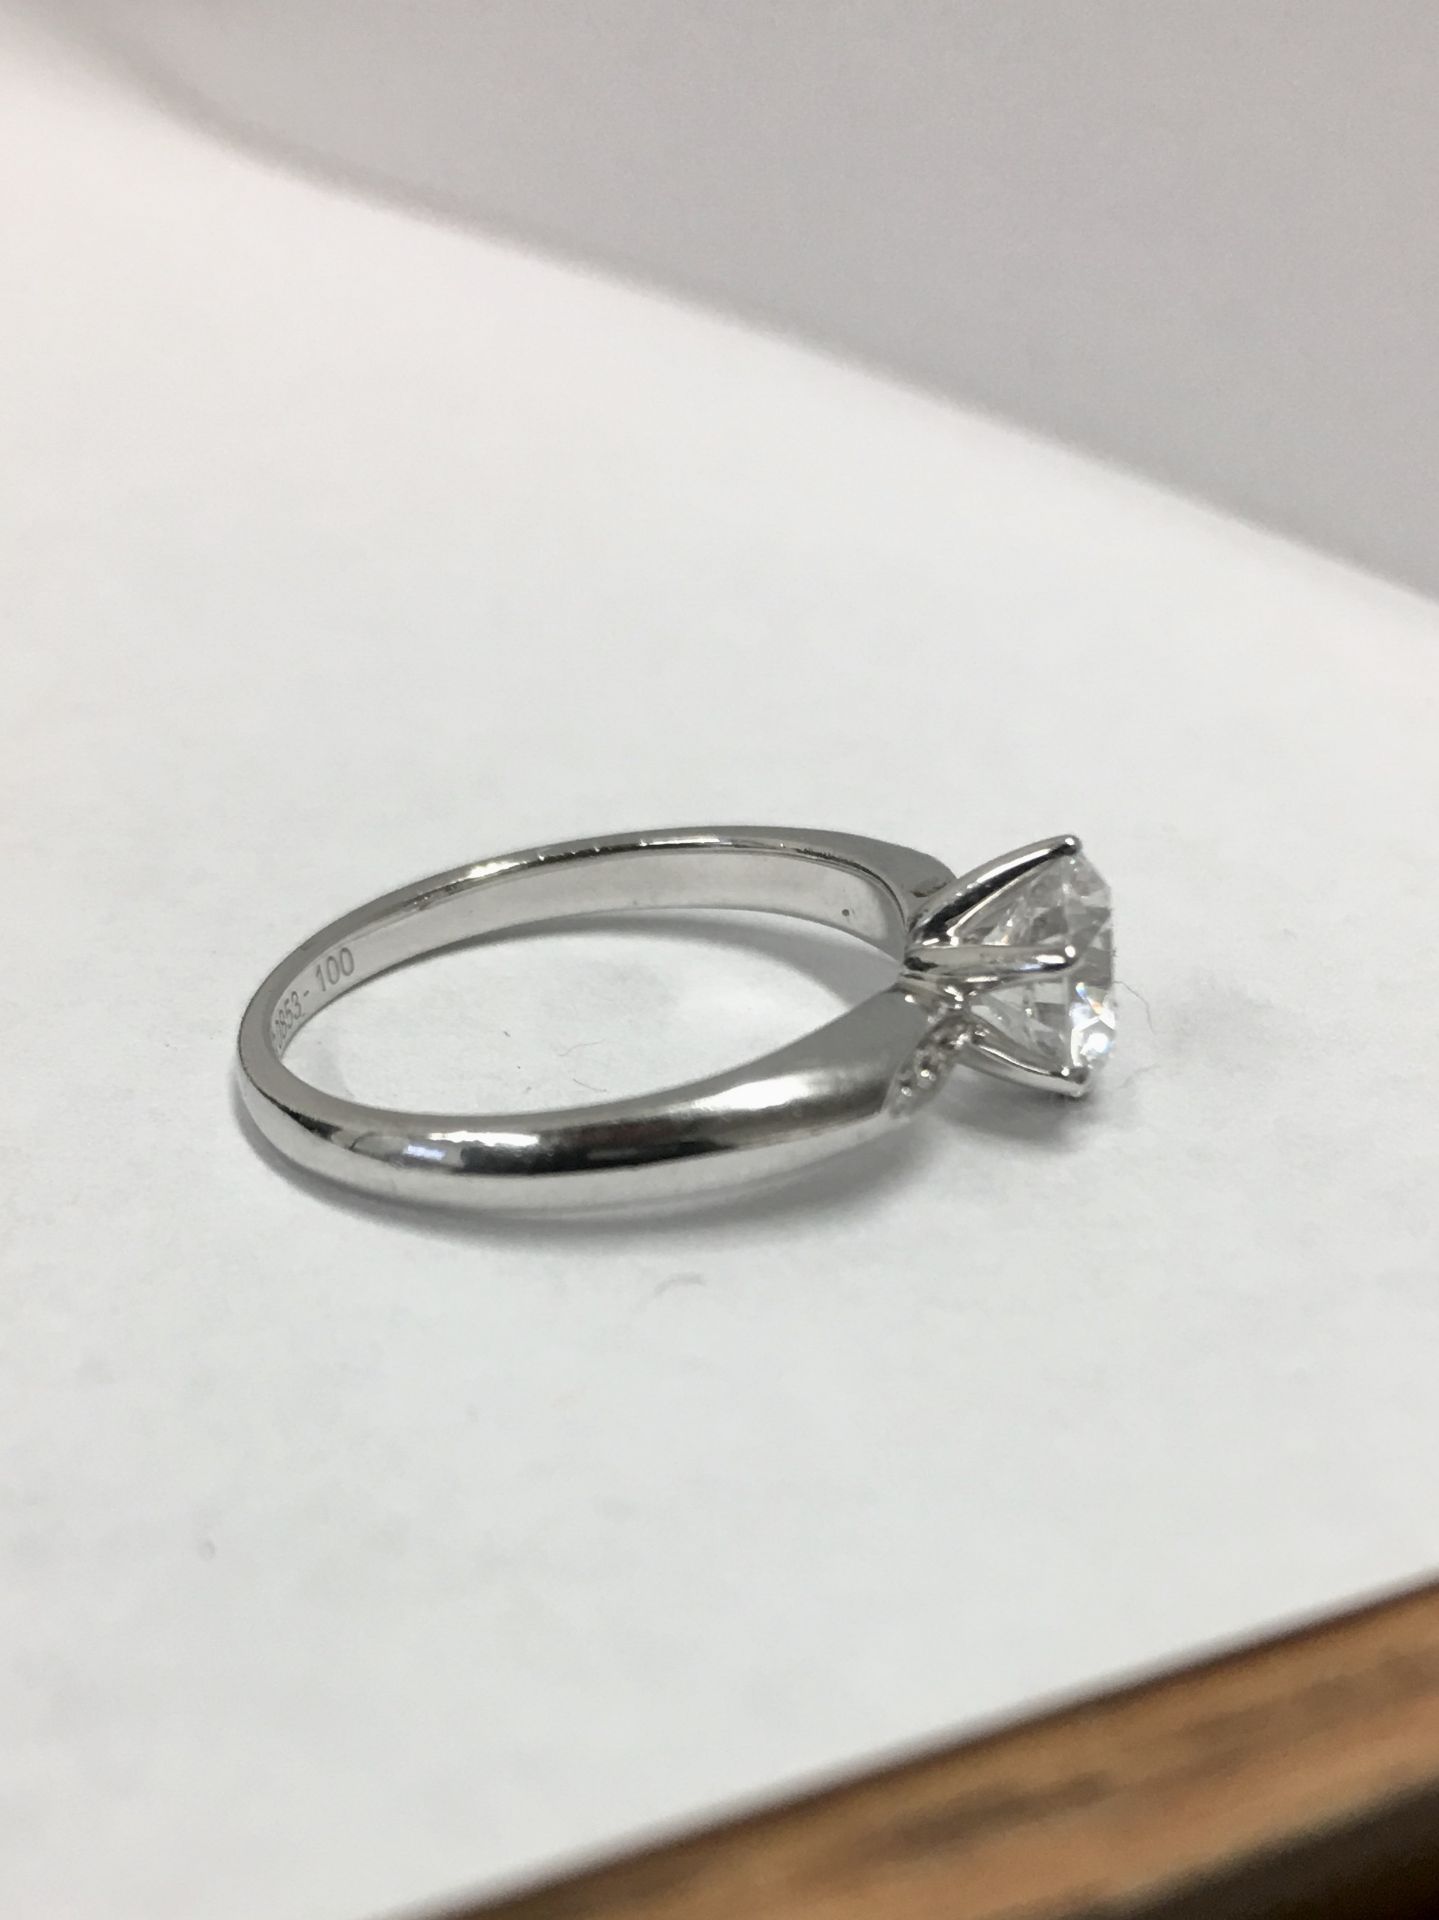 Platinum diamond solitaire ring,0.50ct brilliant cut diamond h colour vs clarity(clarity enhanced), - Image 2 of 4